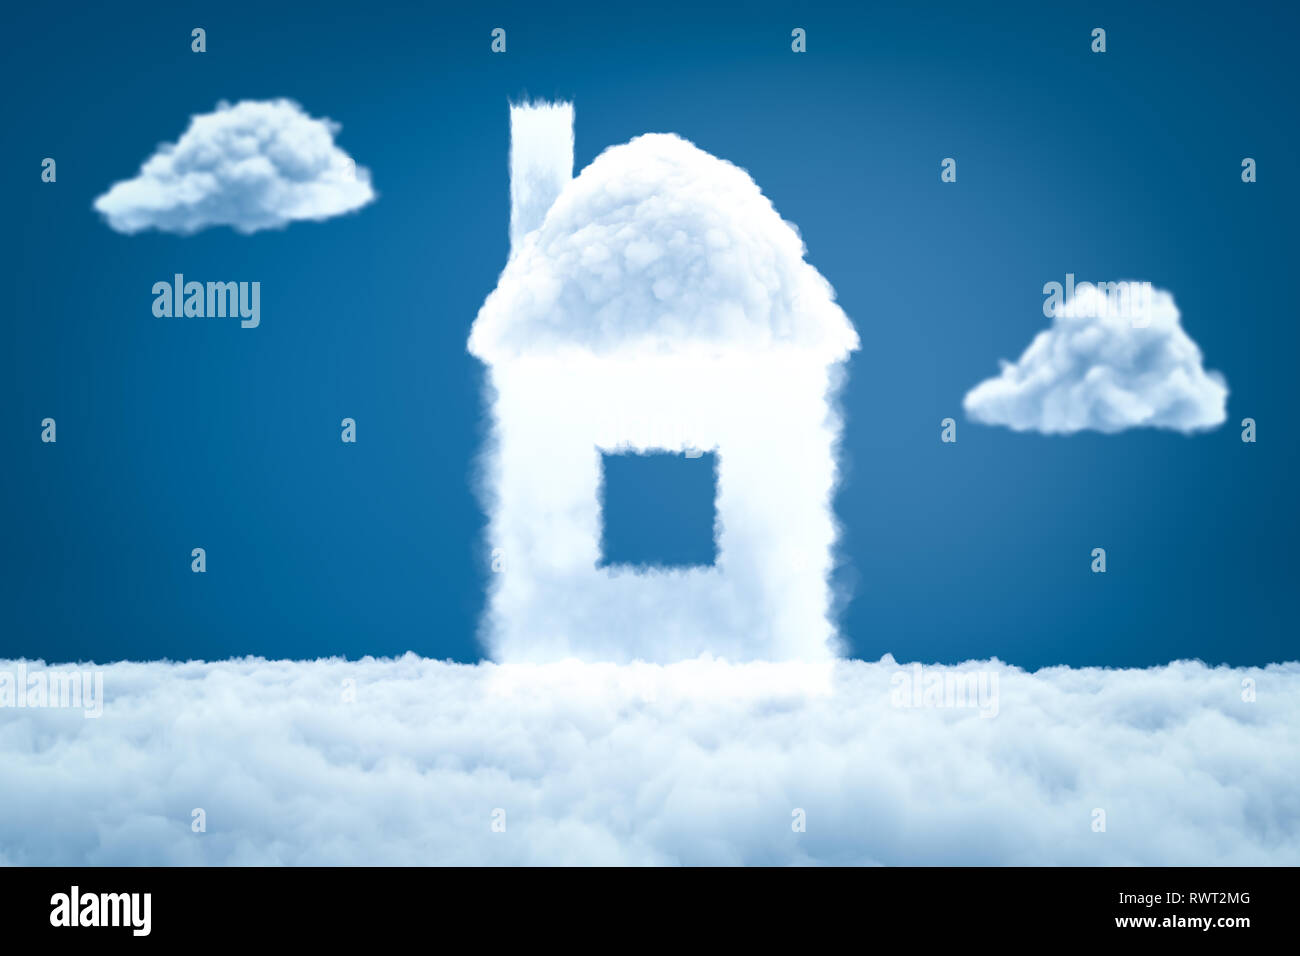 Le rendu 3D de la maison nuage blanc sur fond bleu Banque D'Images